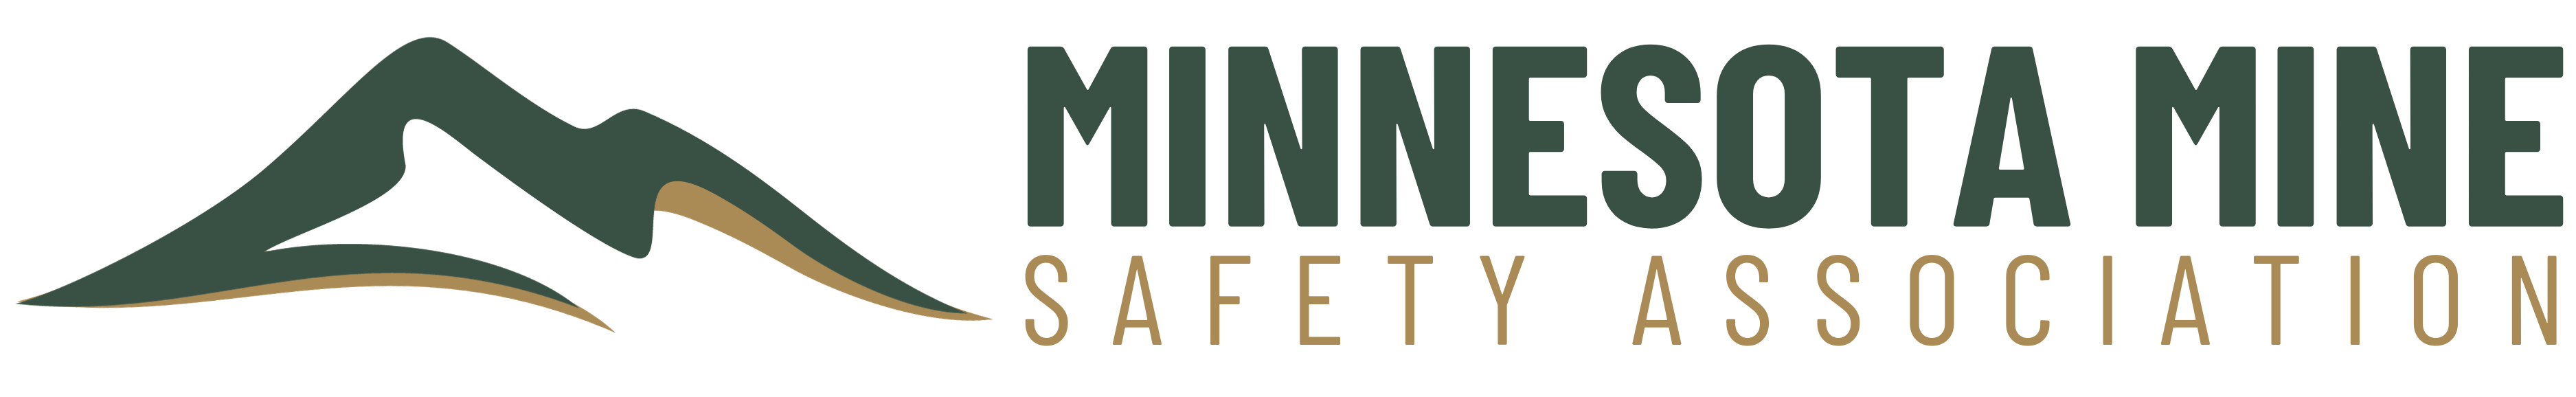 Minnesota Mine Safety Association